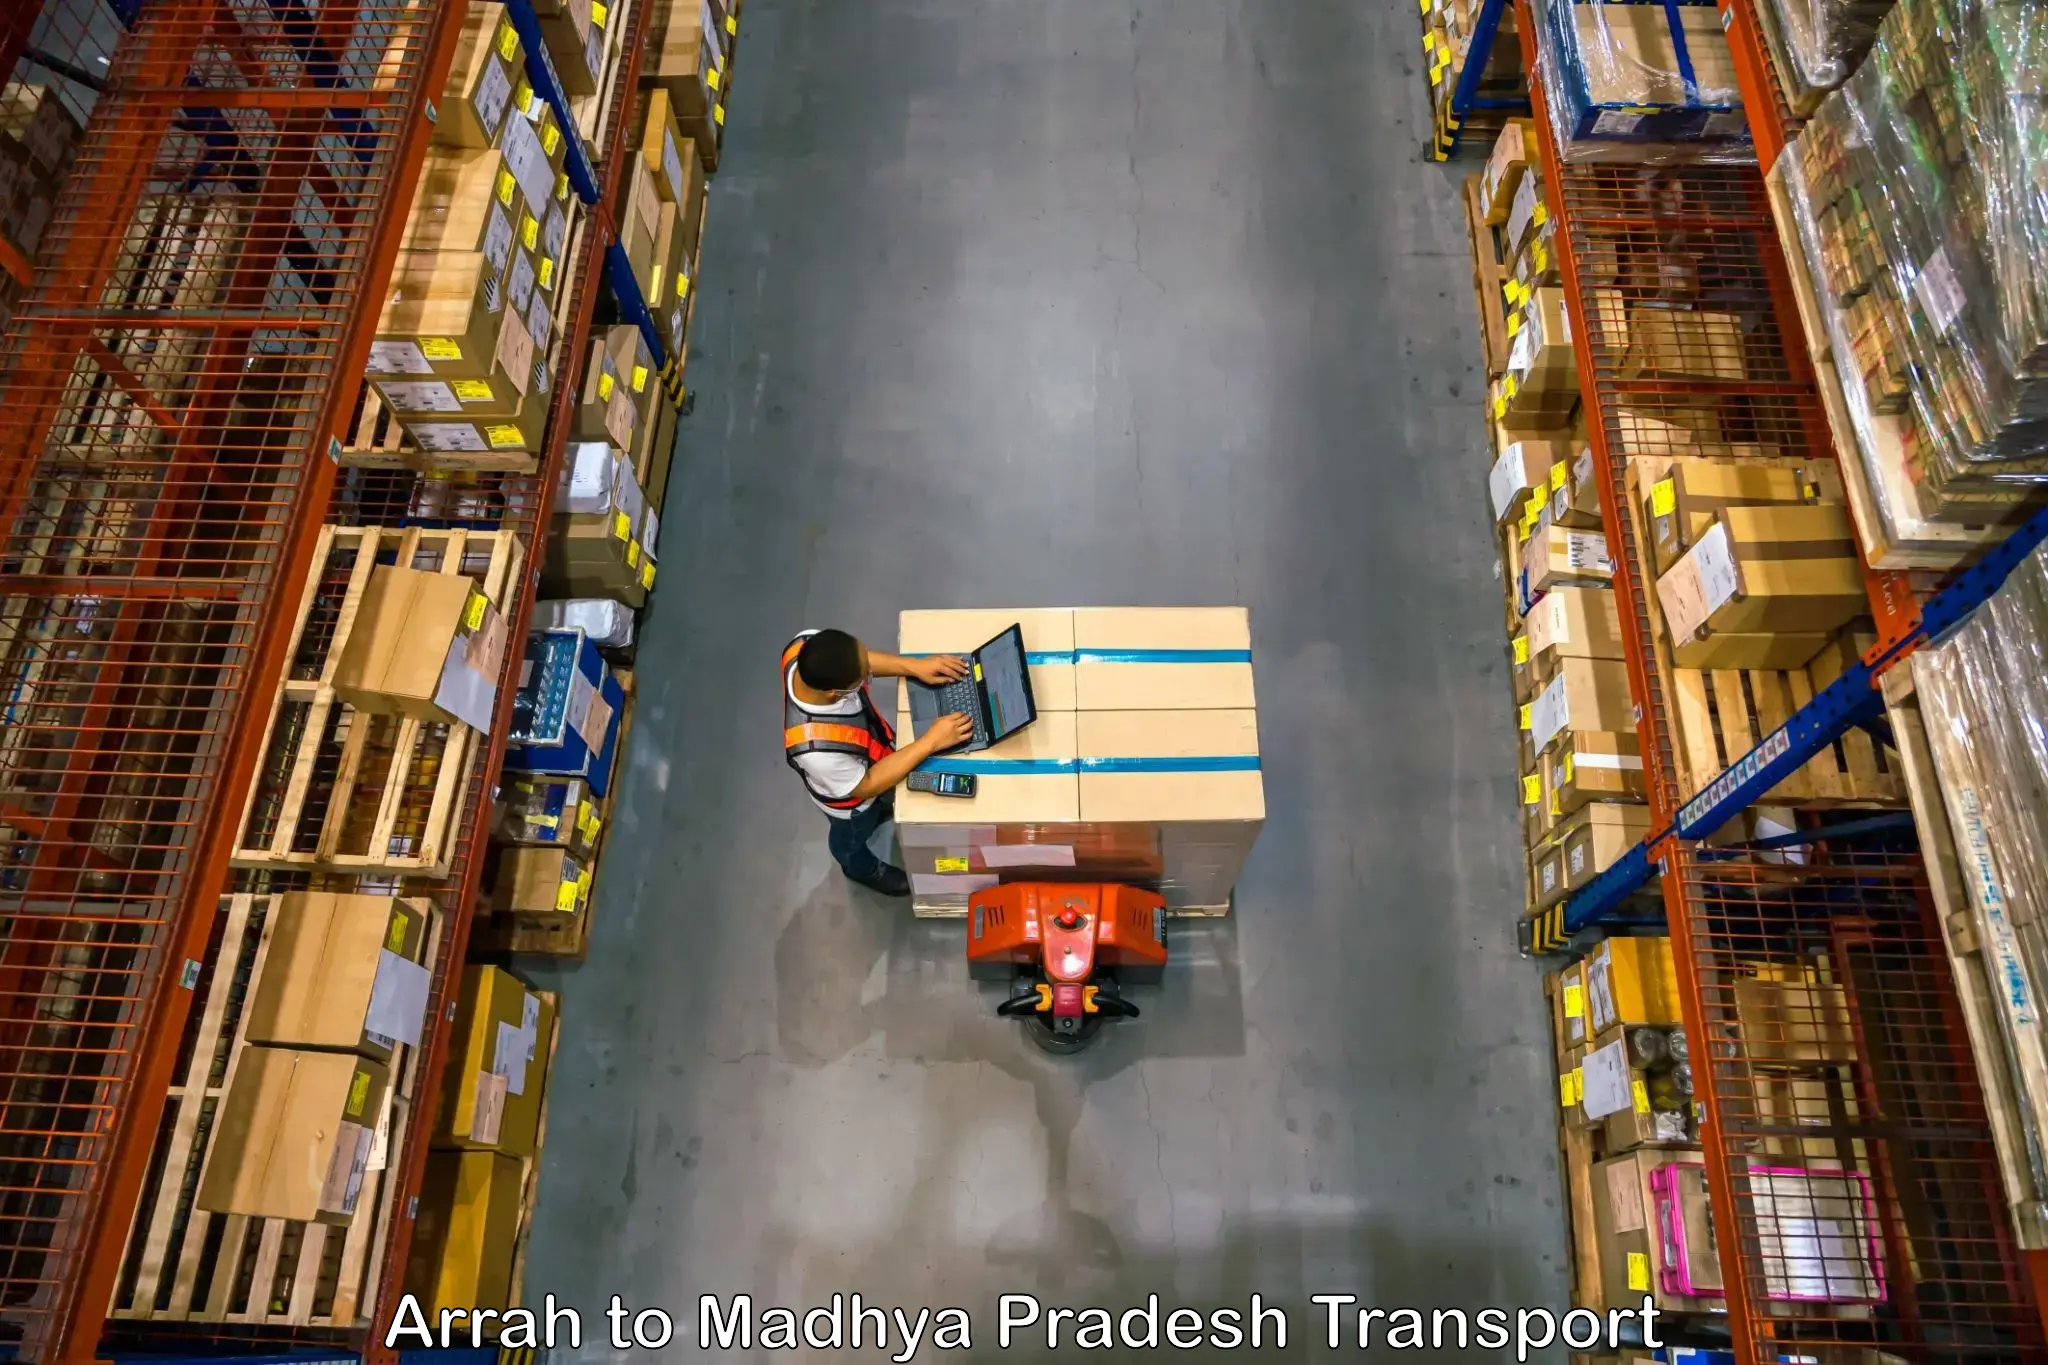 Furniture transport service Arrah to Satna